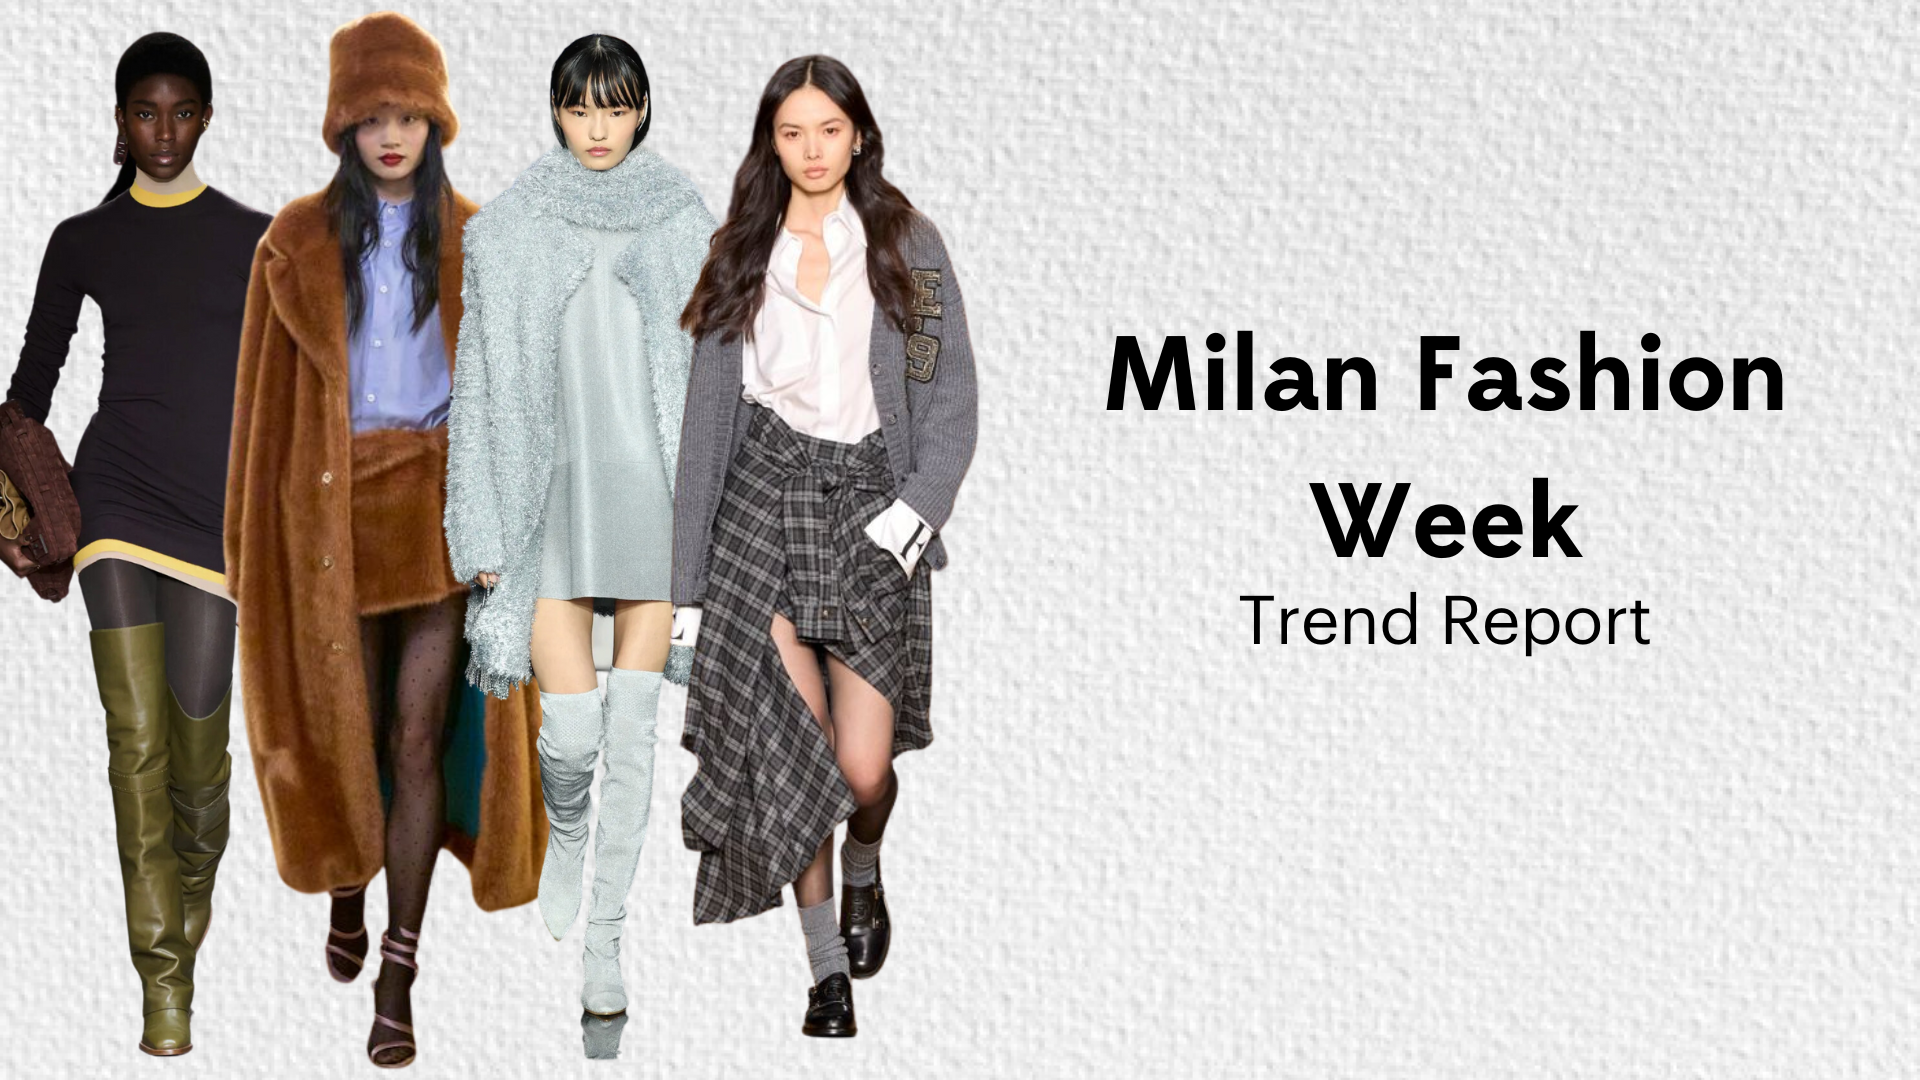 Milan Fashion Week Trend Report